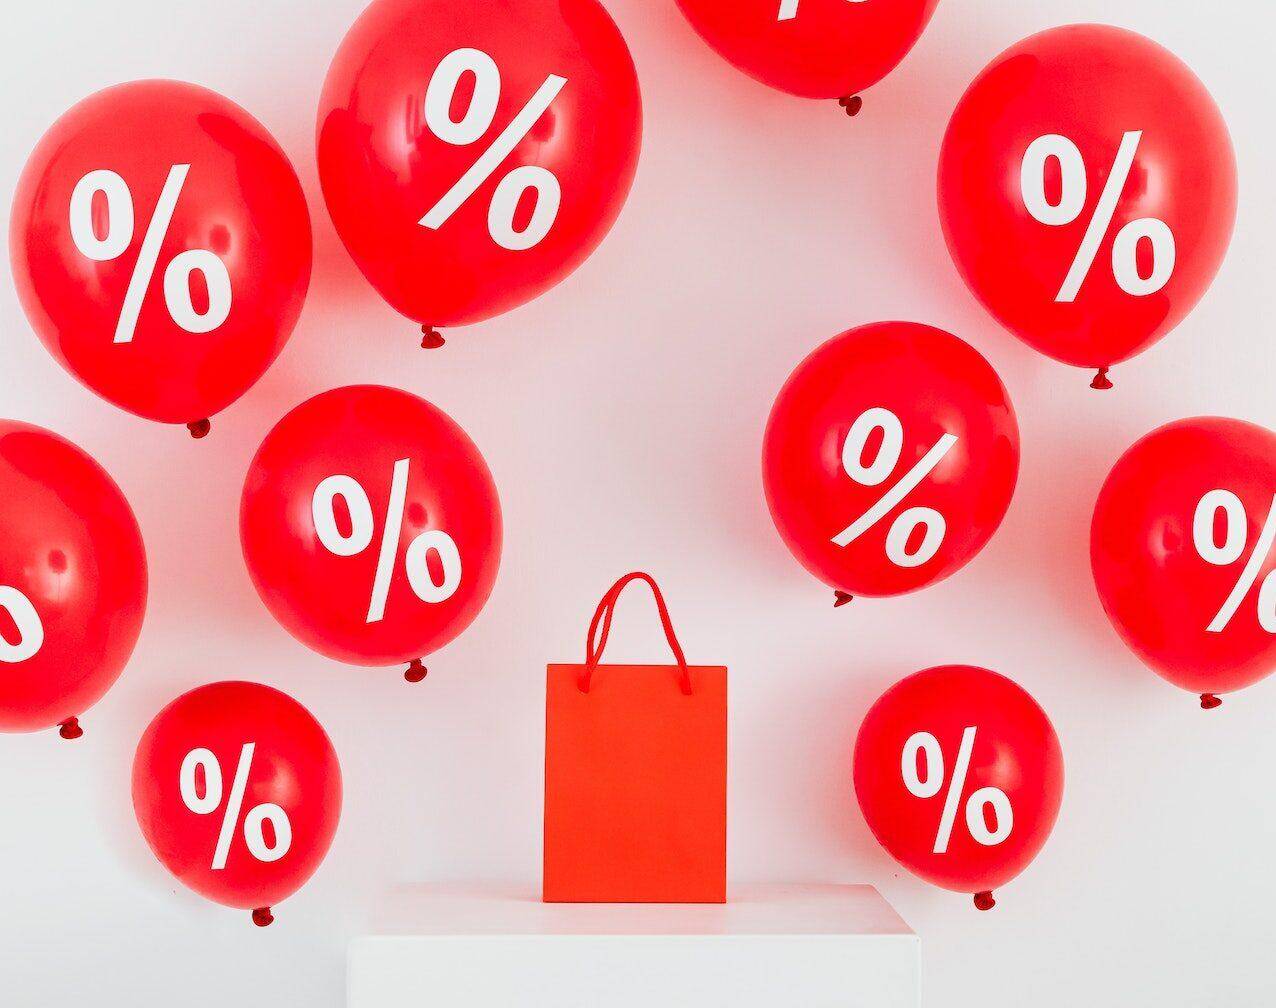 torba na zakupy oraz balony z procentami oznaczające promocję 